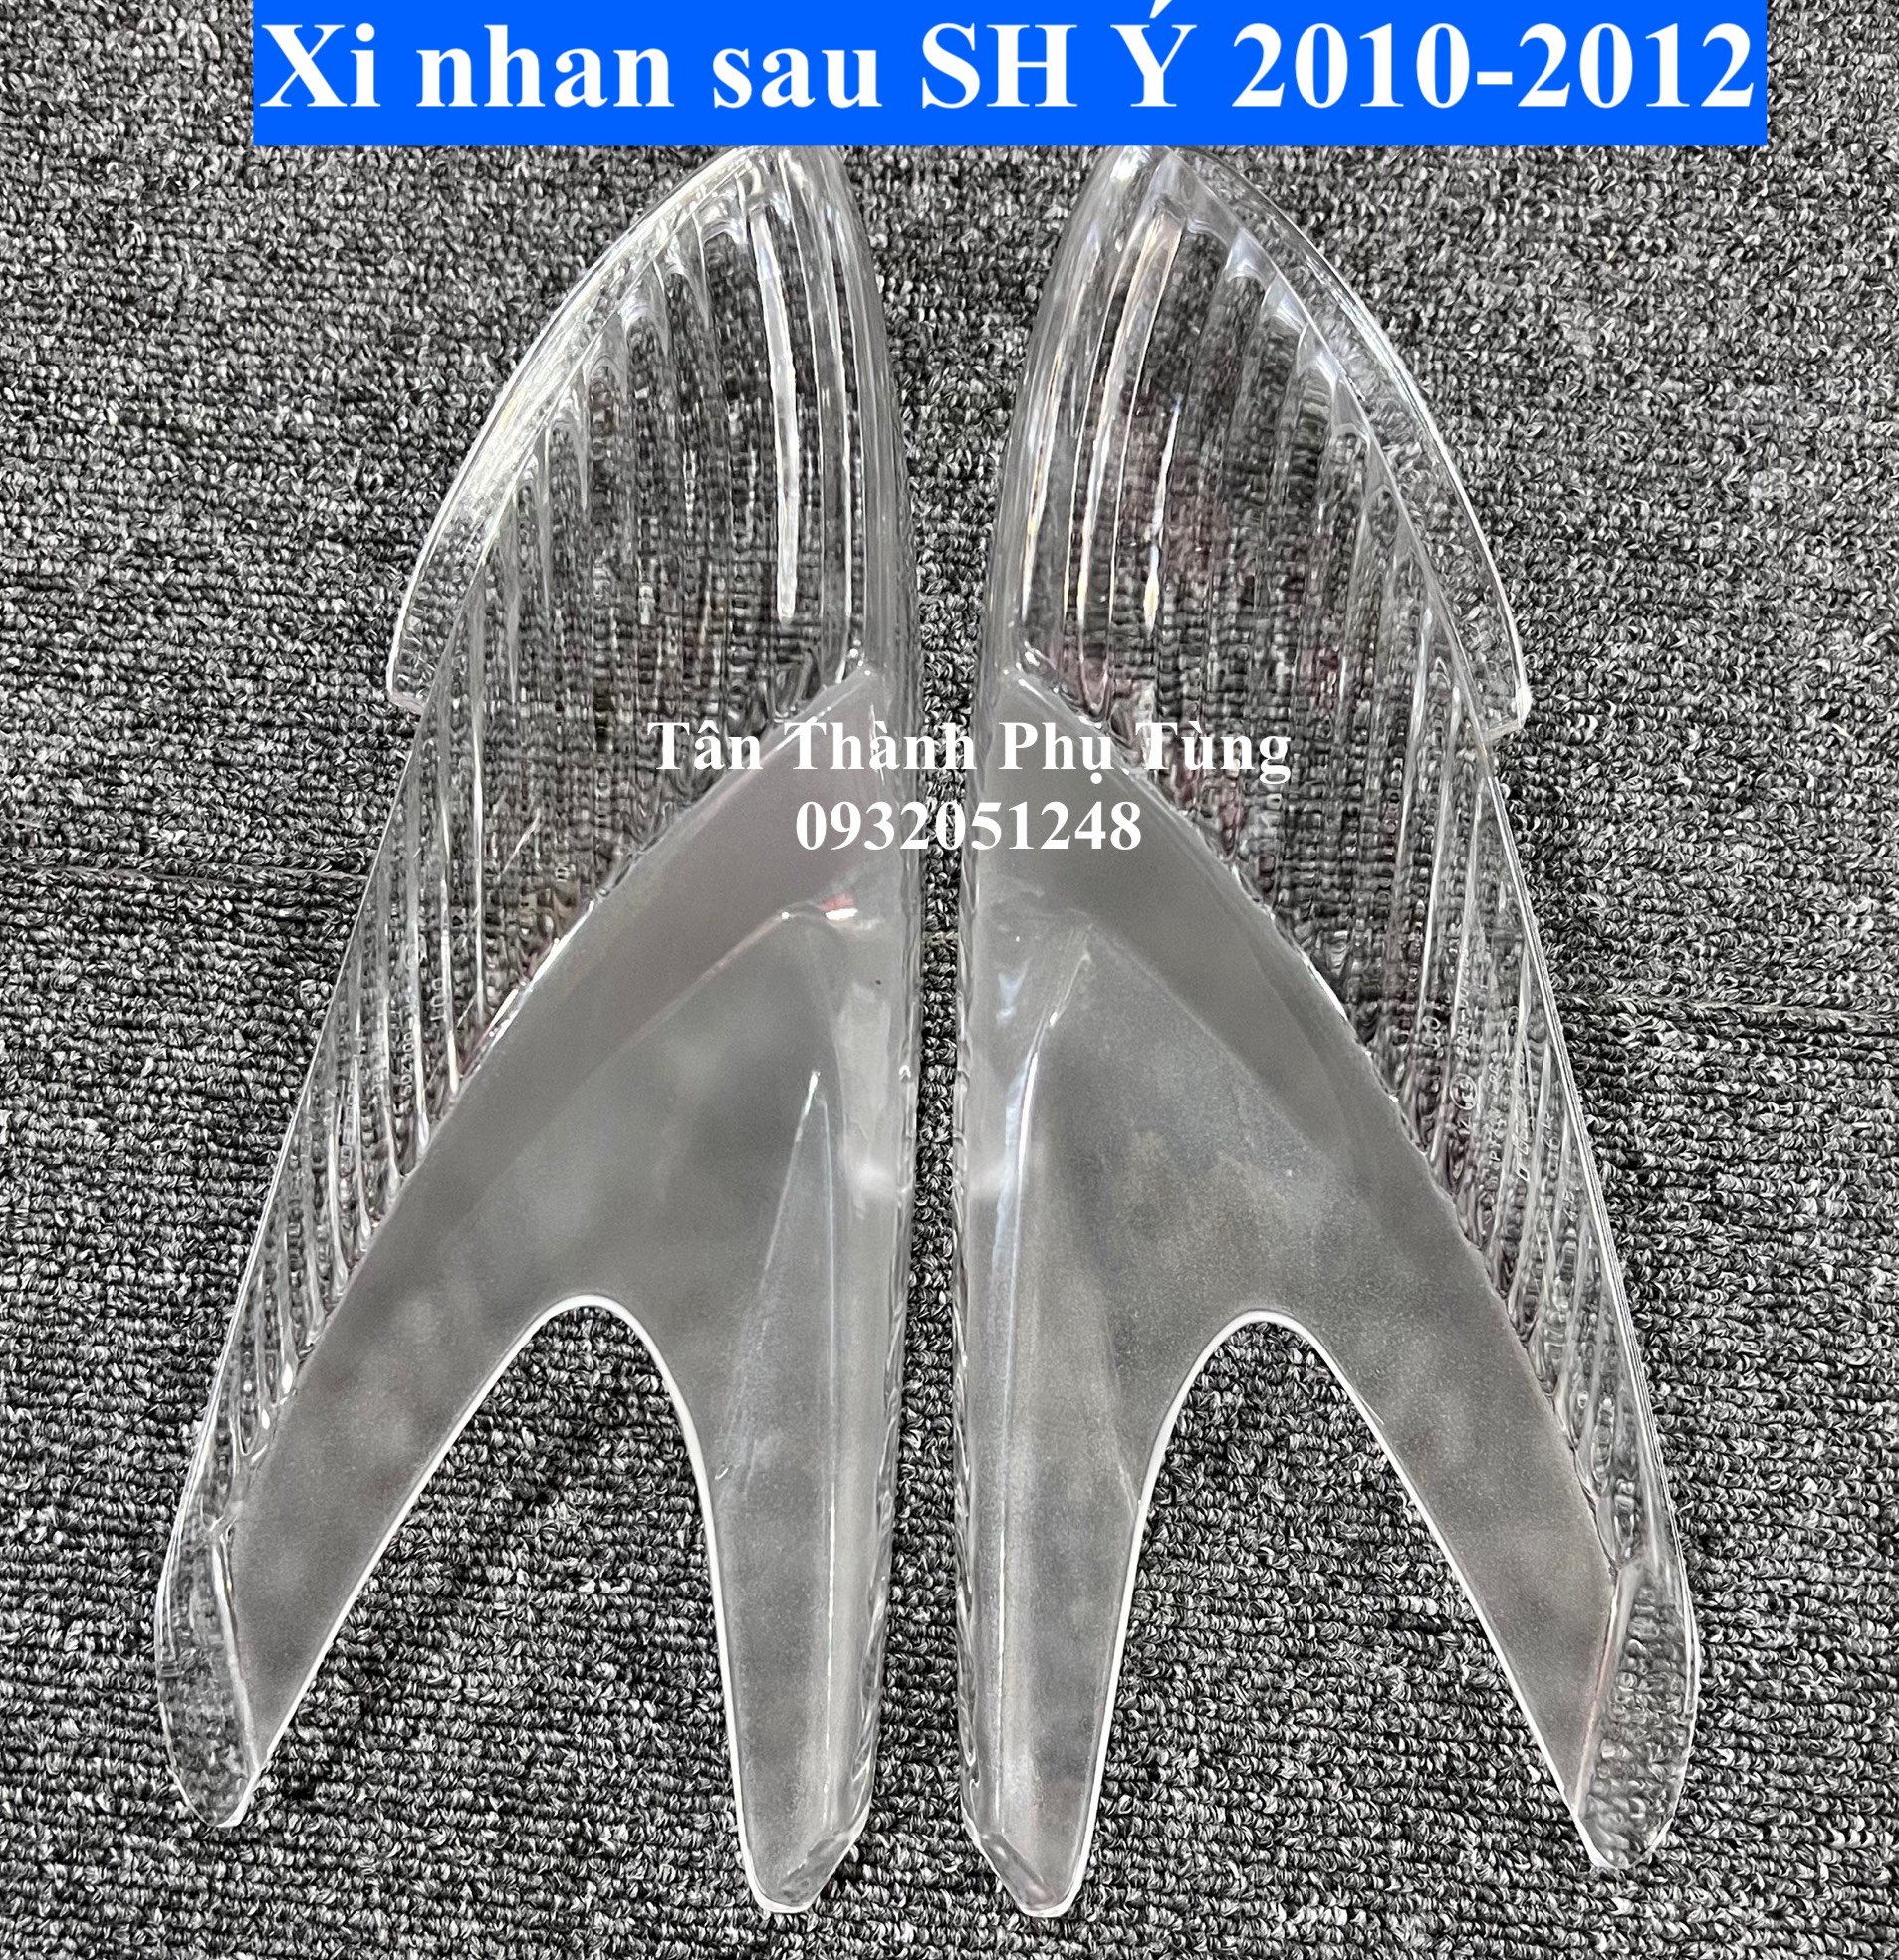 Chụp Xi nhan sau dành cho SH Ý 2010-2012- 2 cái